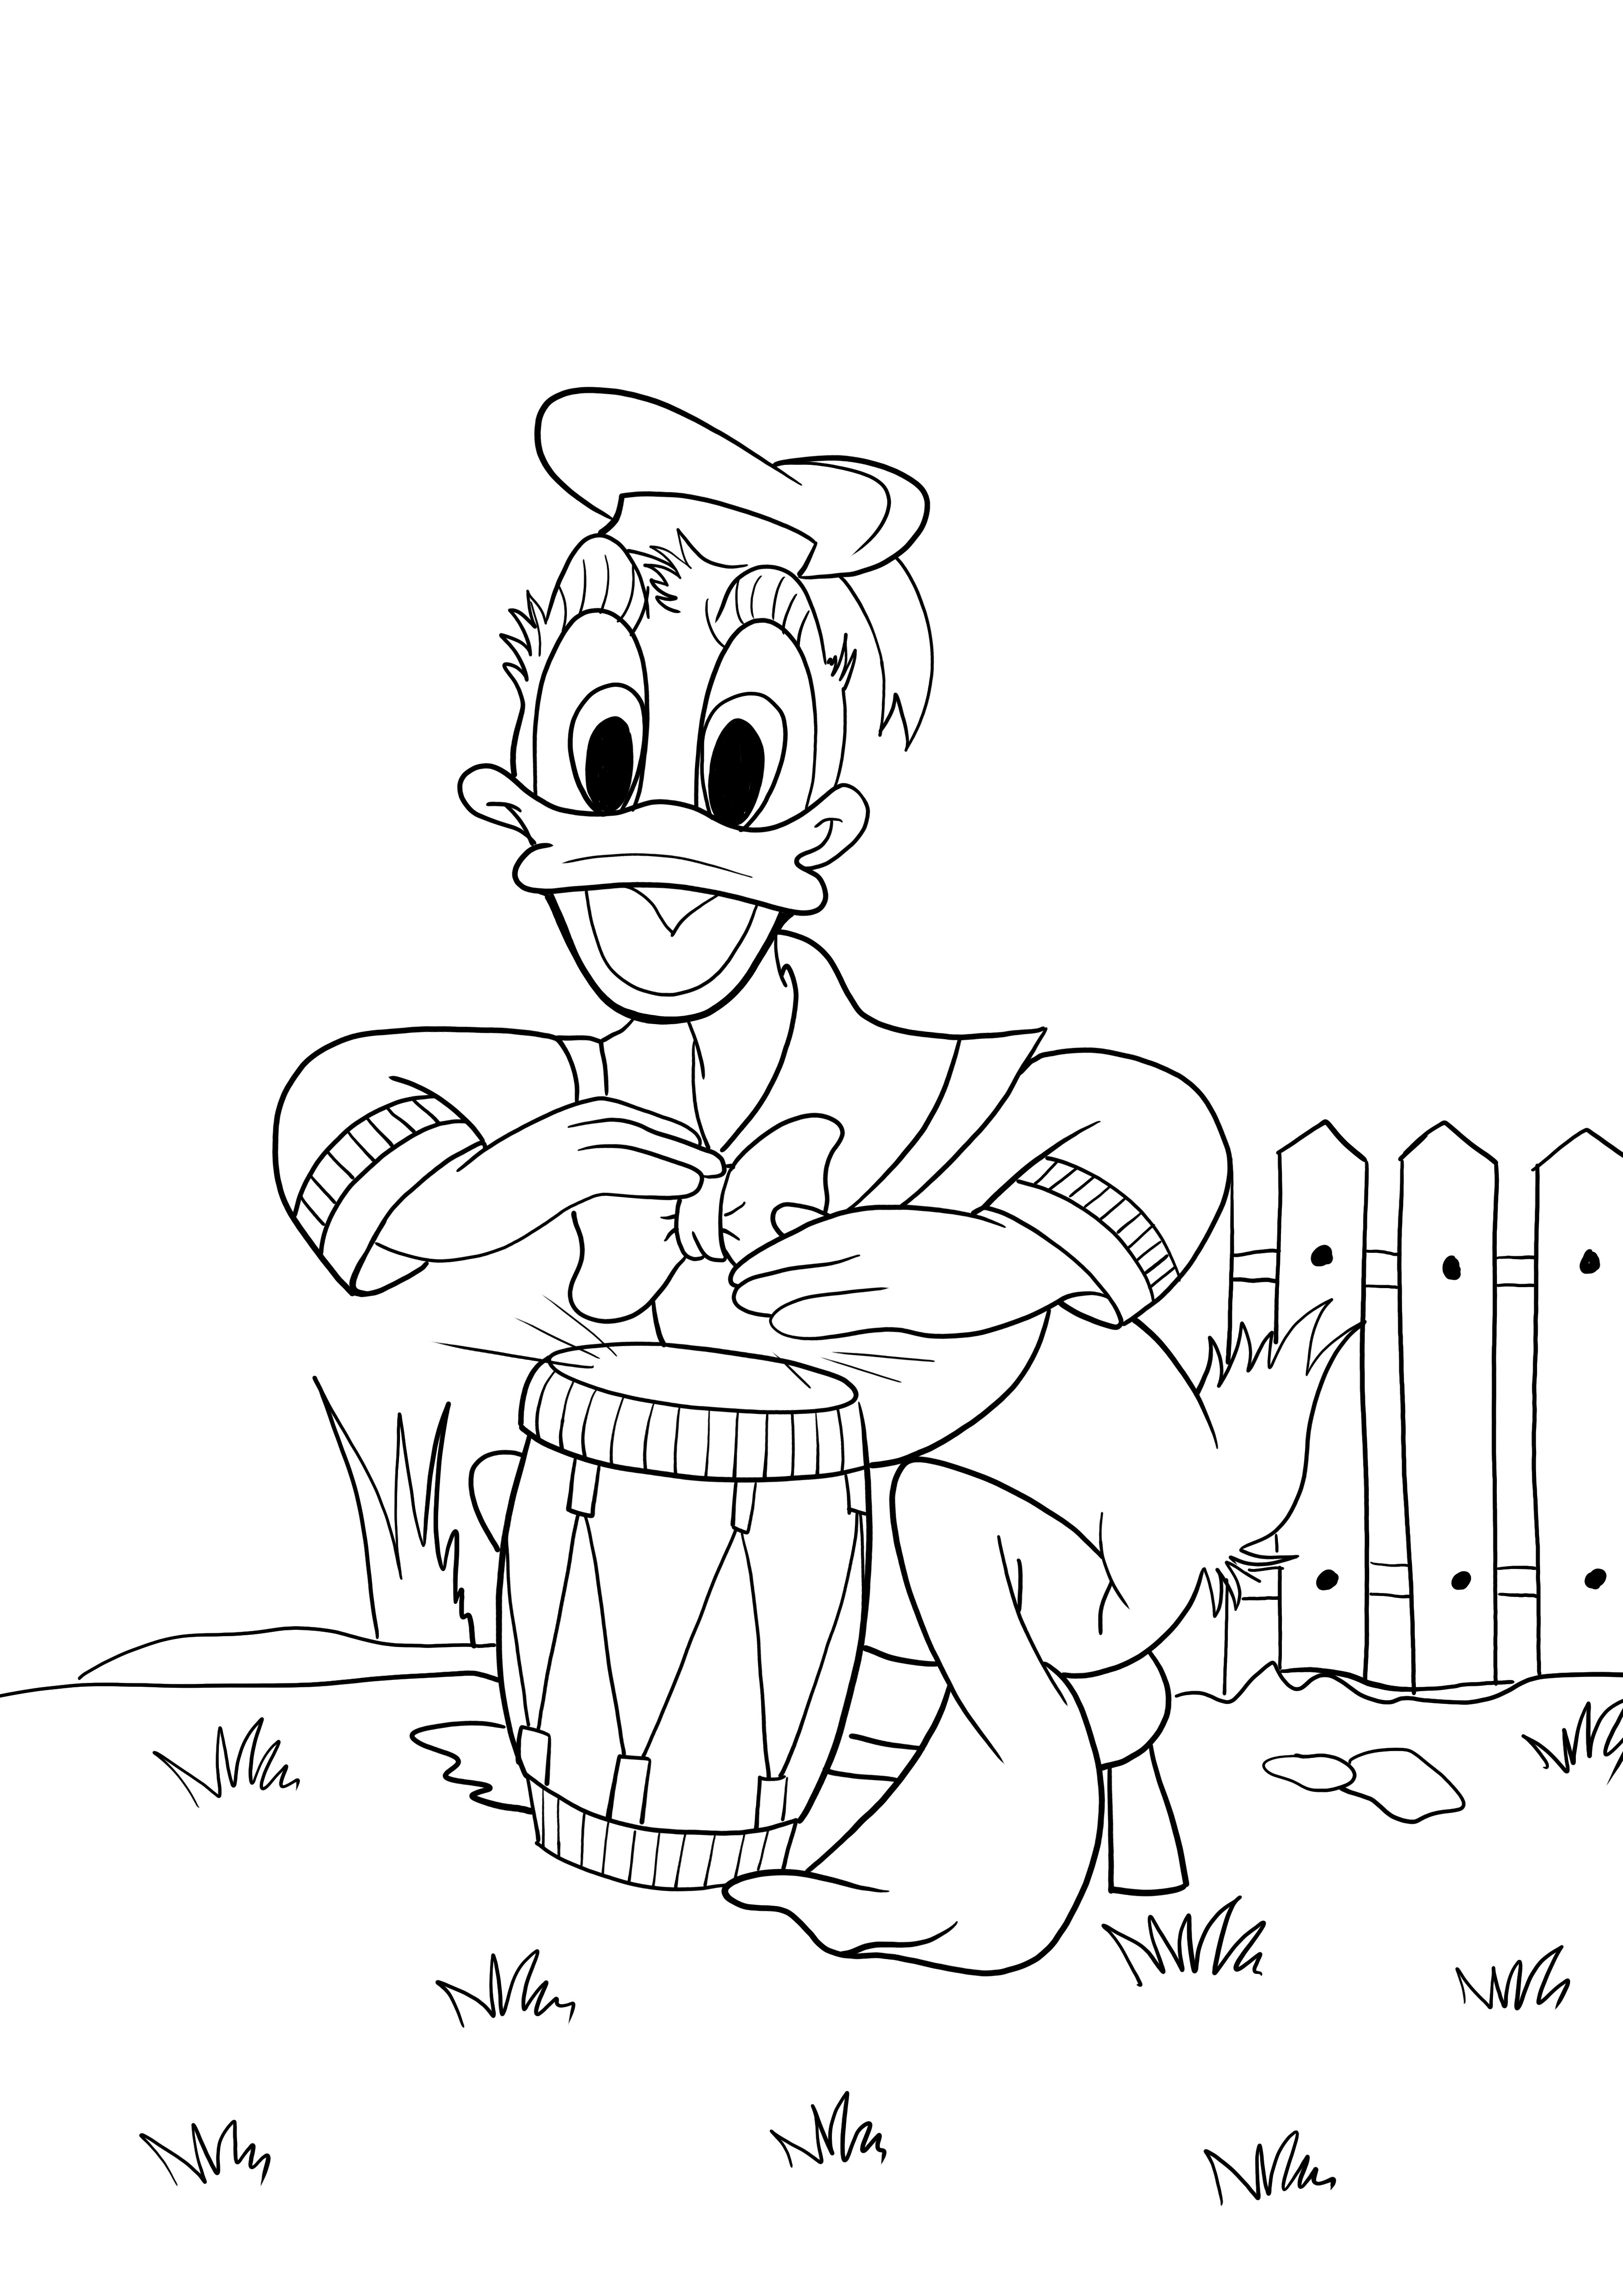 Donald tocando bateria para colorir e imprimir de graça